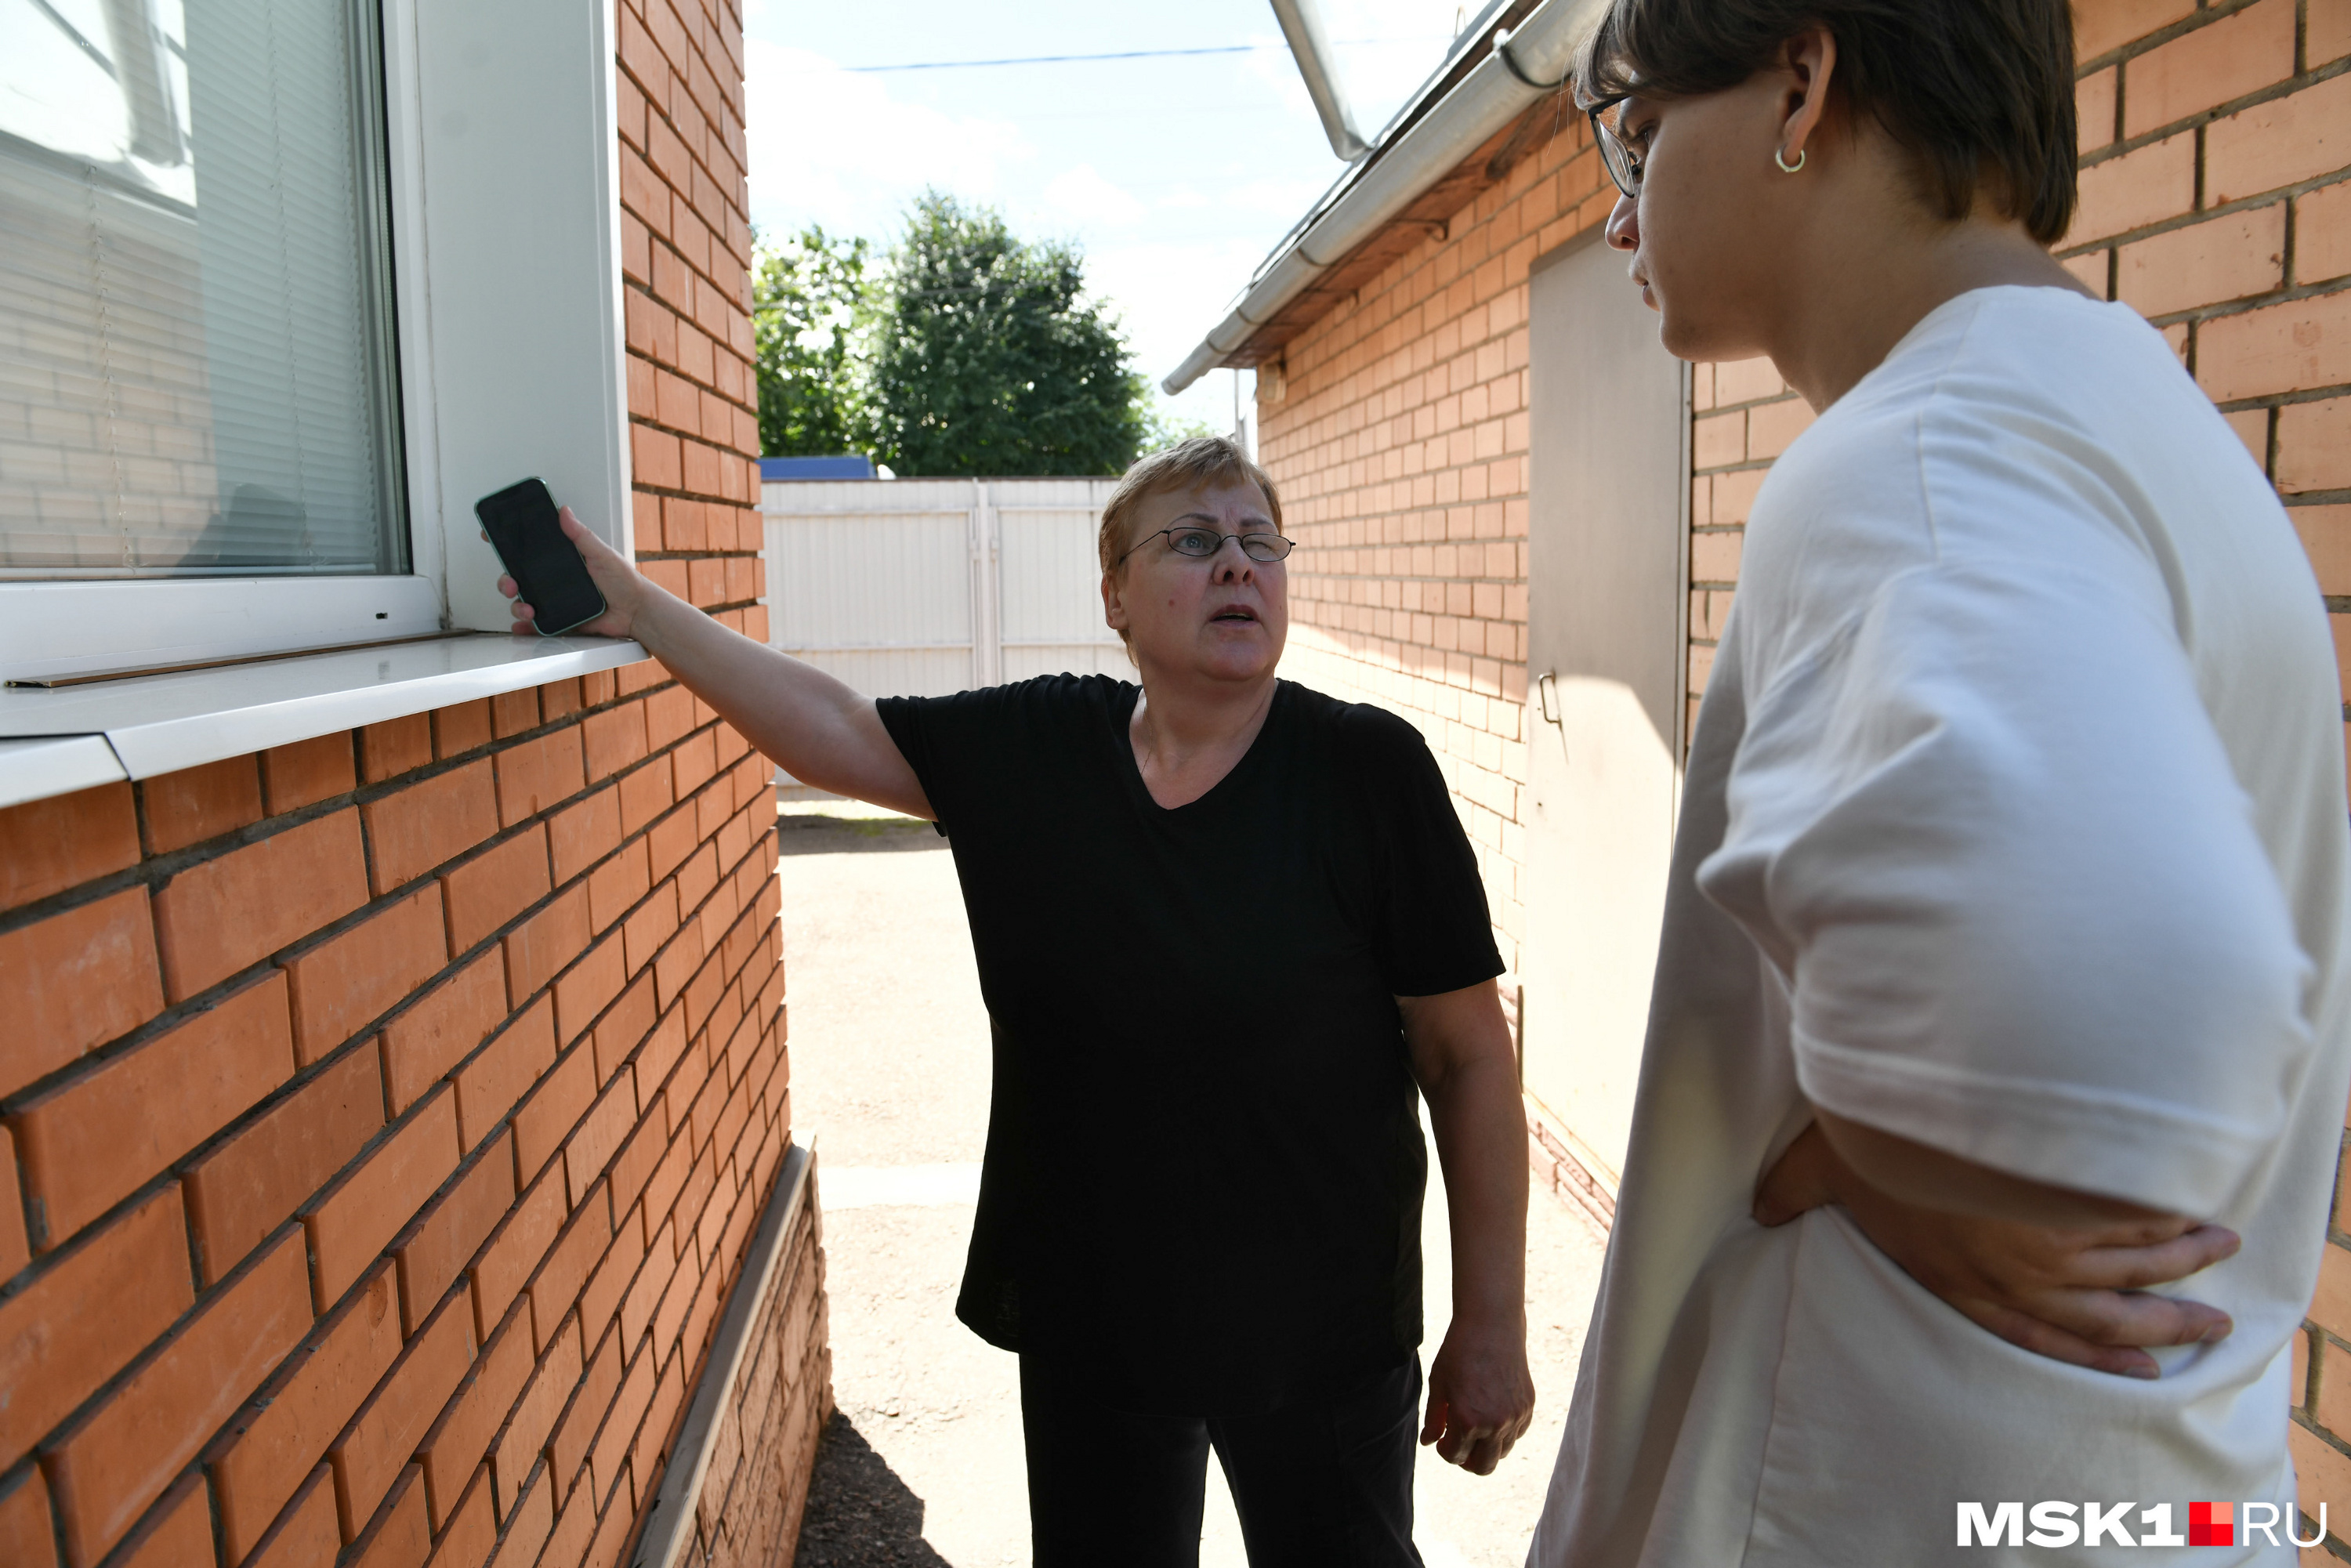 Алла Алексеевна показывает нашему корреспонденту, откуда Вадим забрал электронную сигарету. Она несколько дней стояла на подоконнике на солнце — а в итоге взорвалась в руках у 13-летнего мальчика